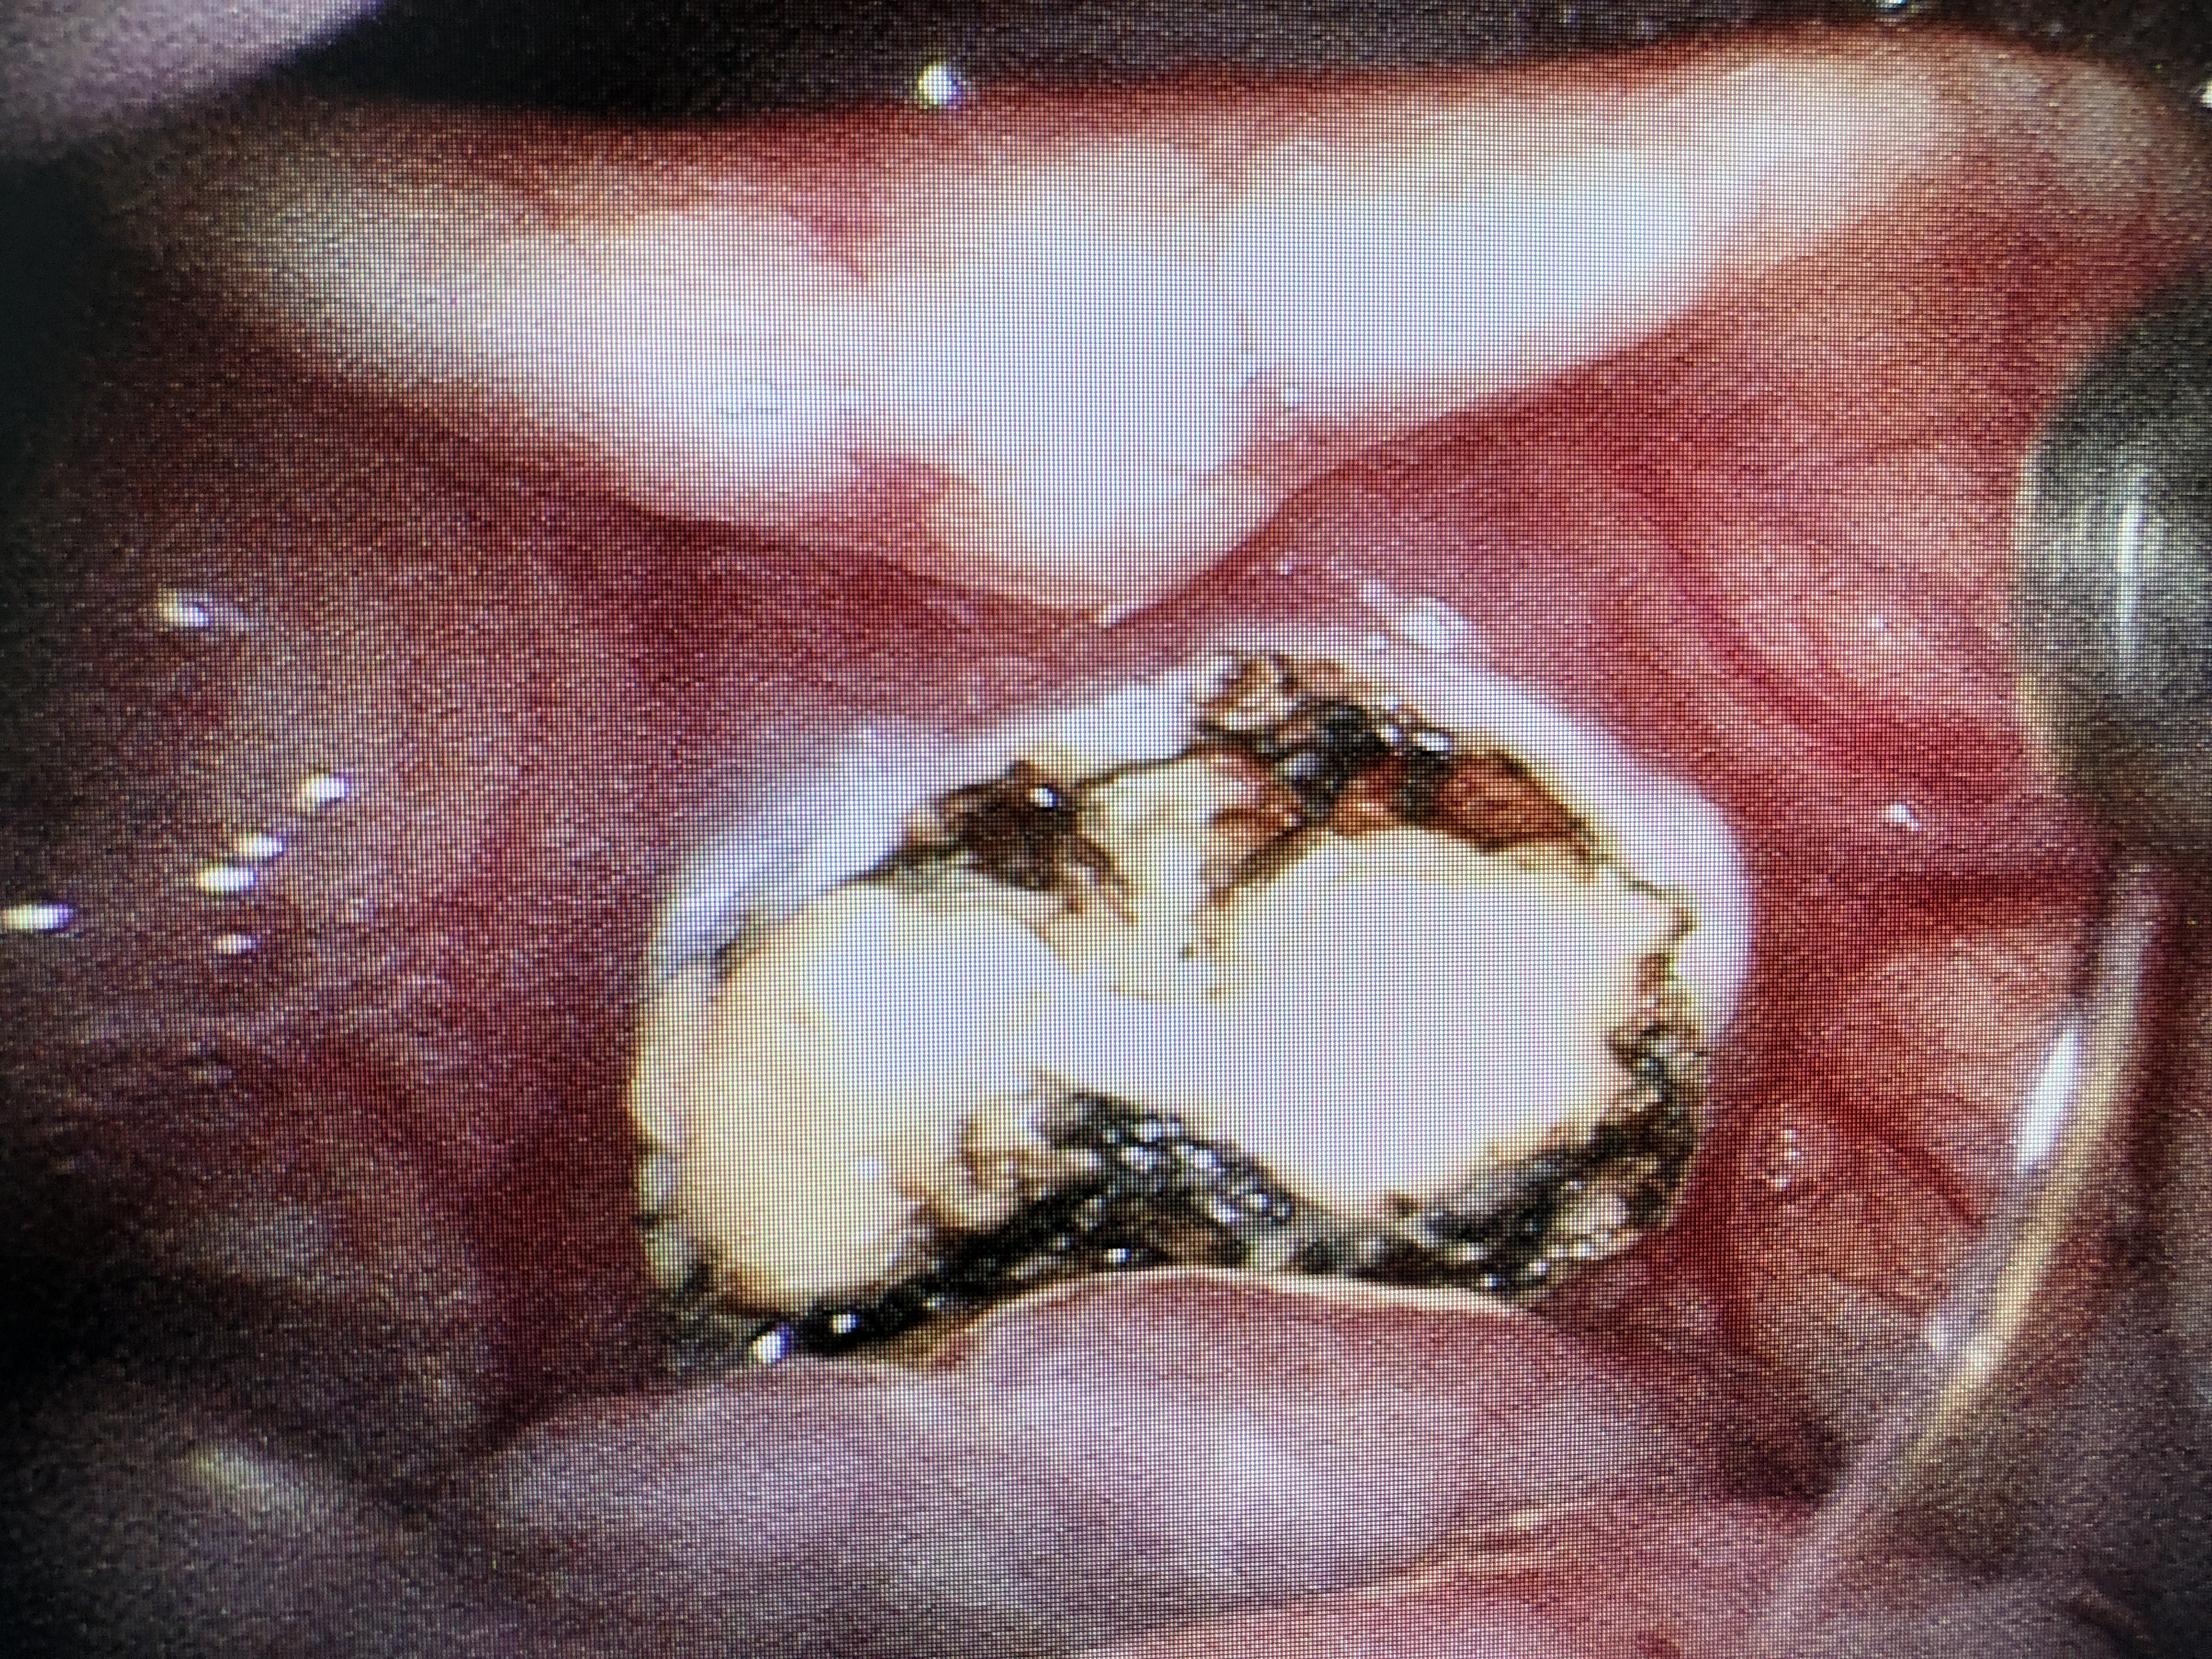 电子喉镜下可以看到会厌舌面中份及偏左两处大小不等囊肿样物